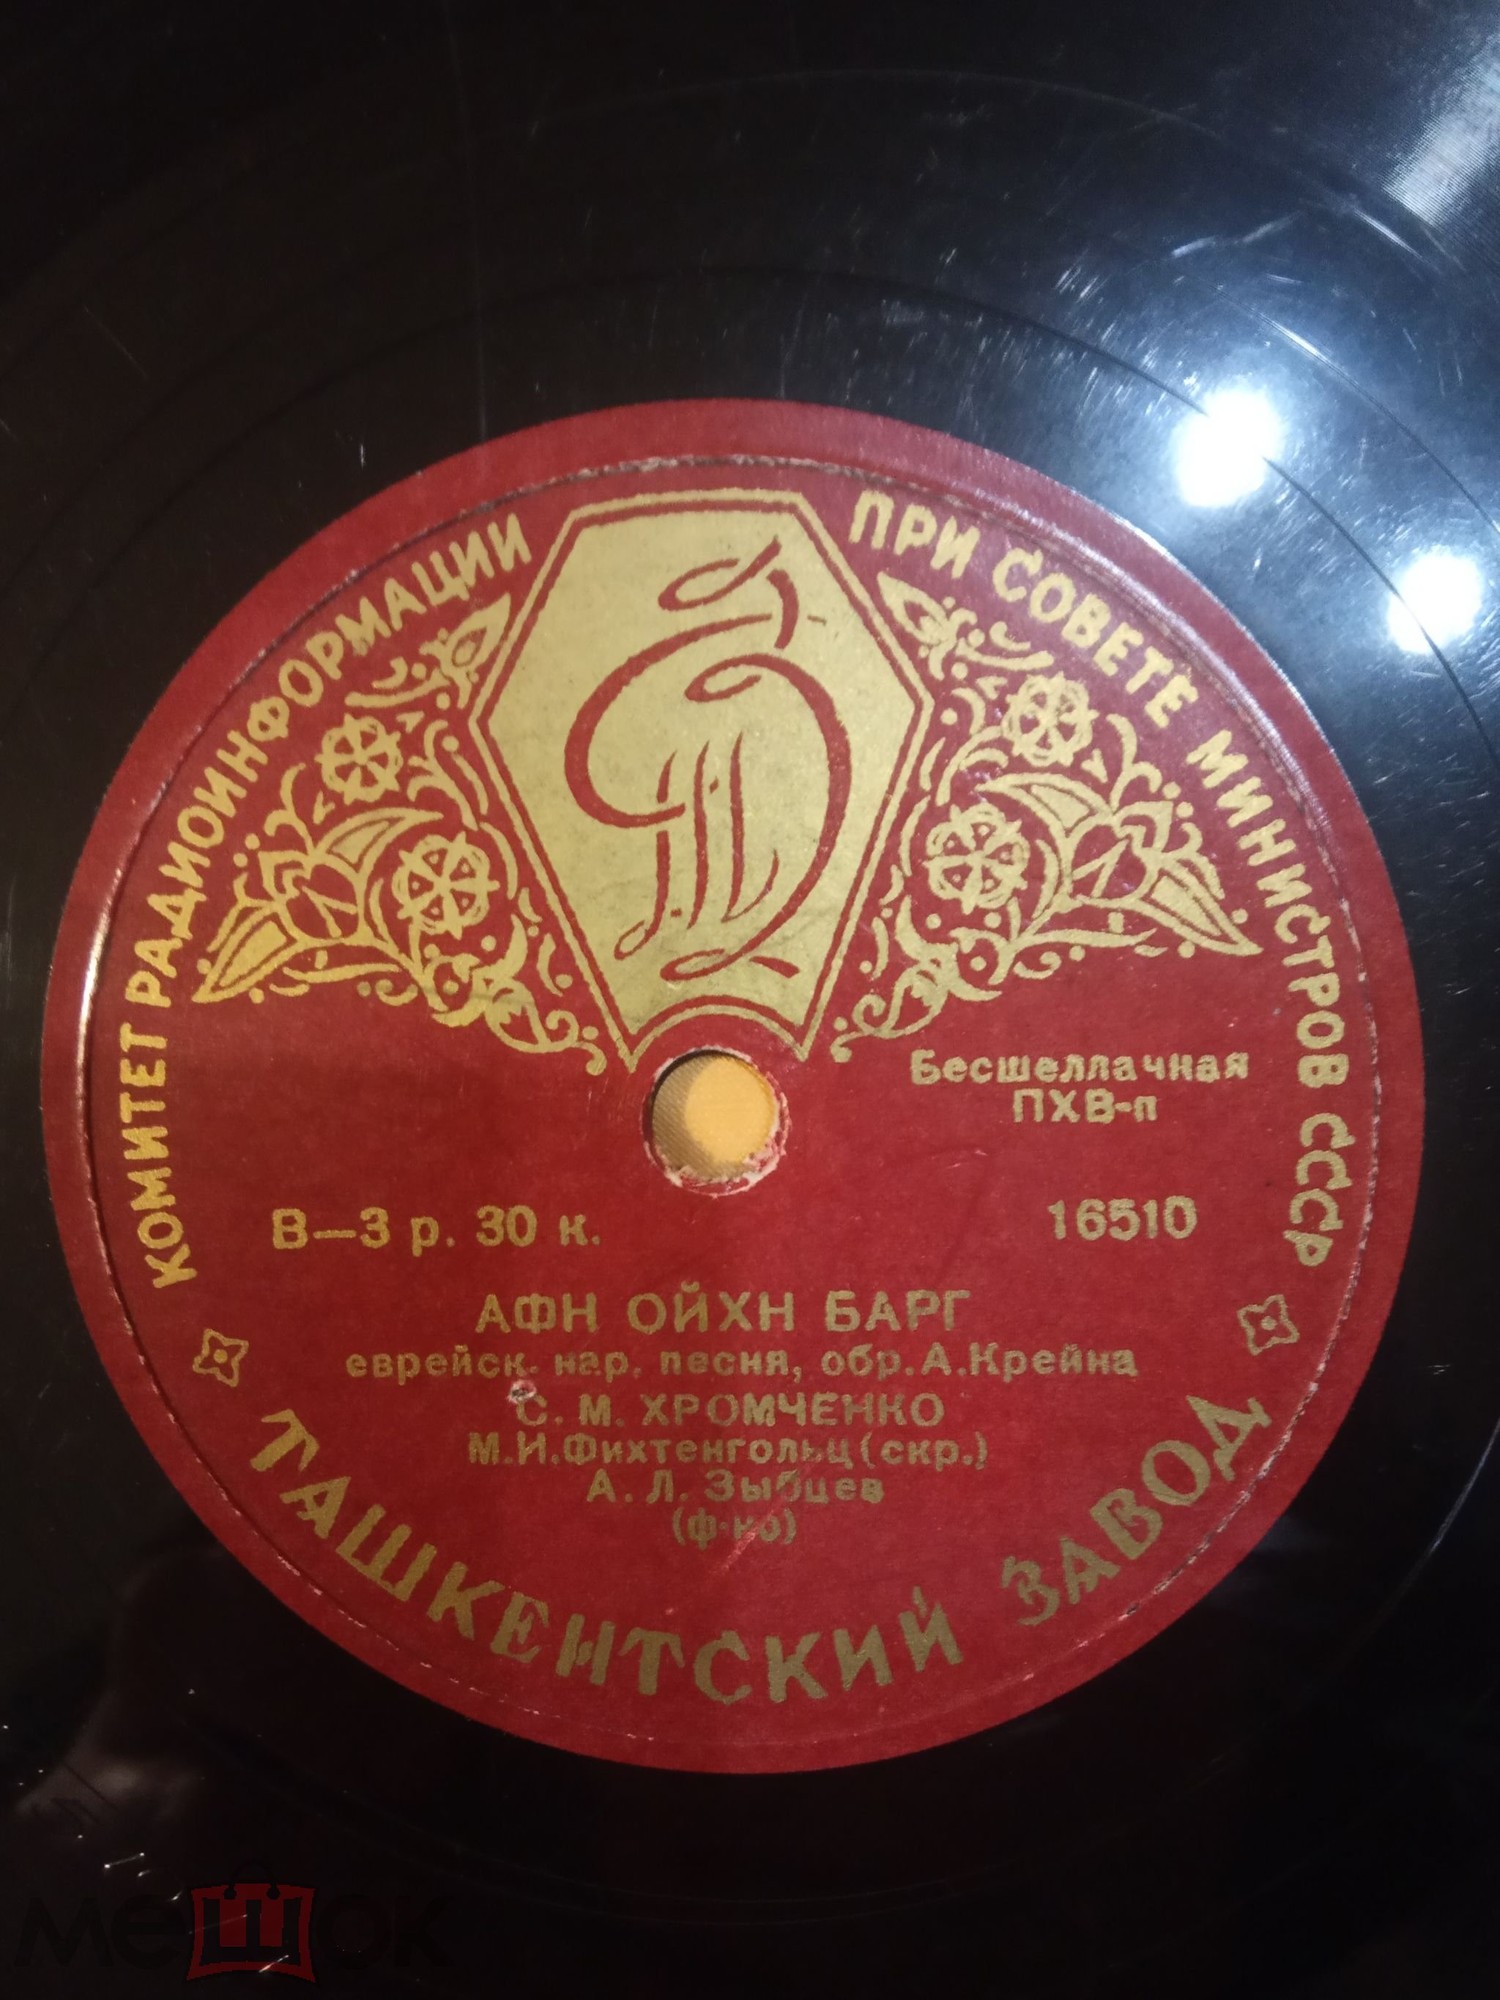 С. М. Хромченко поет еврейские народные песни